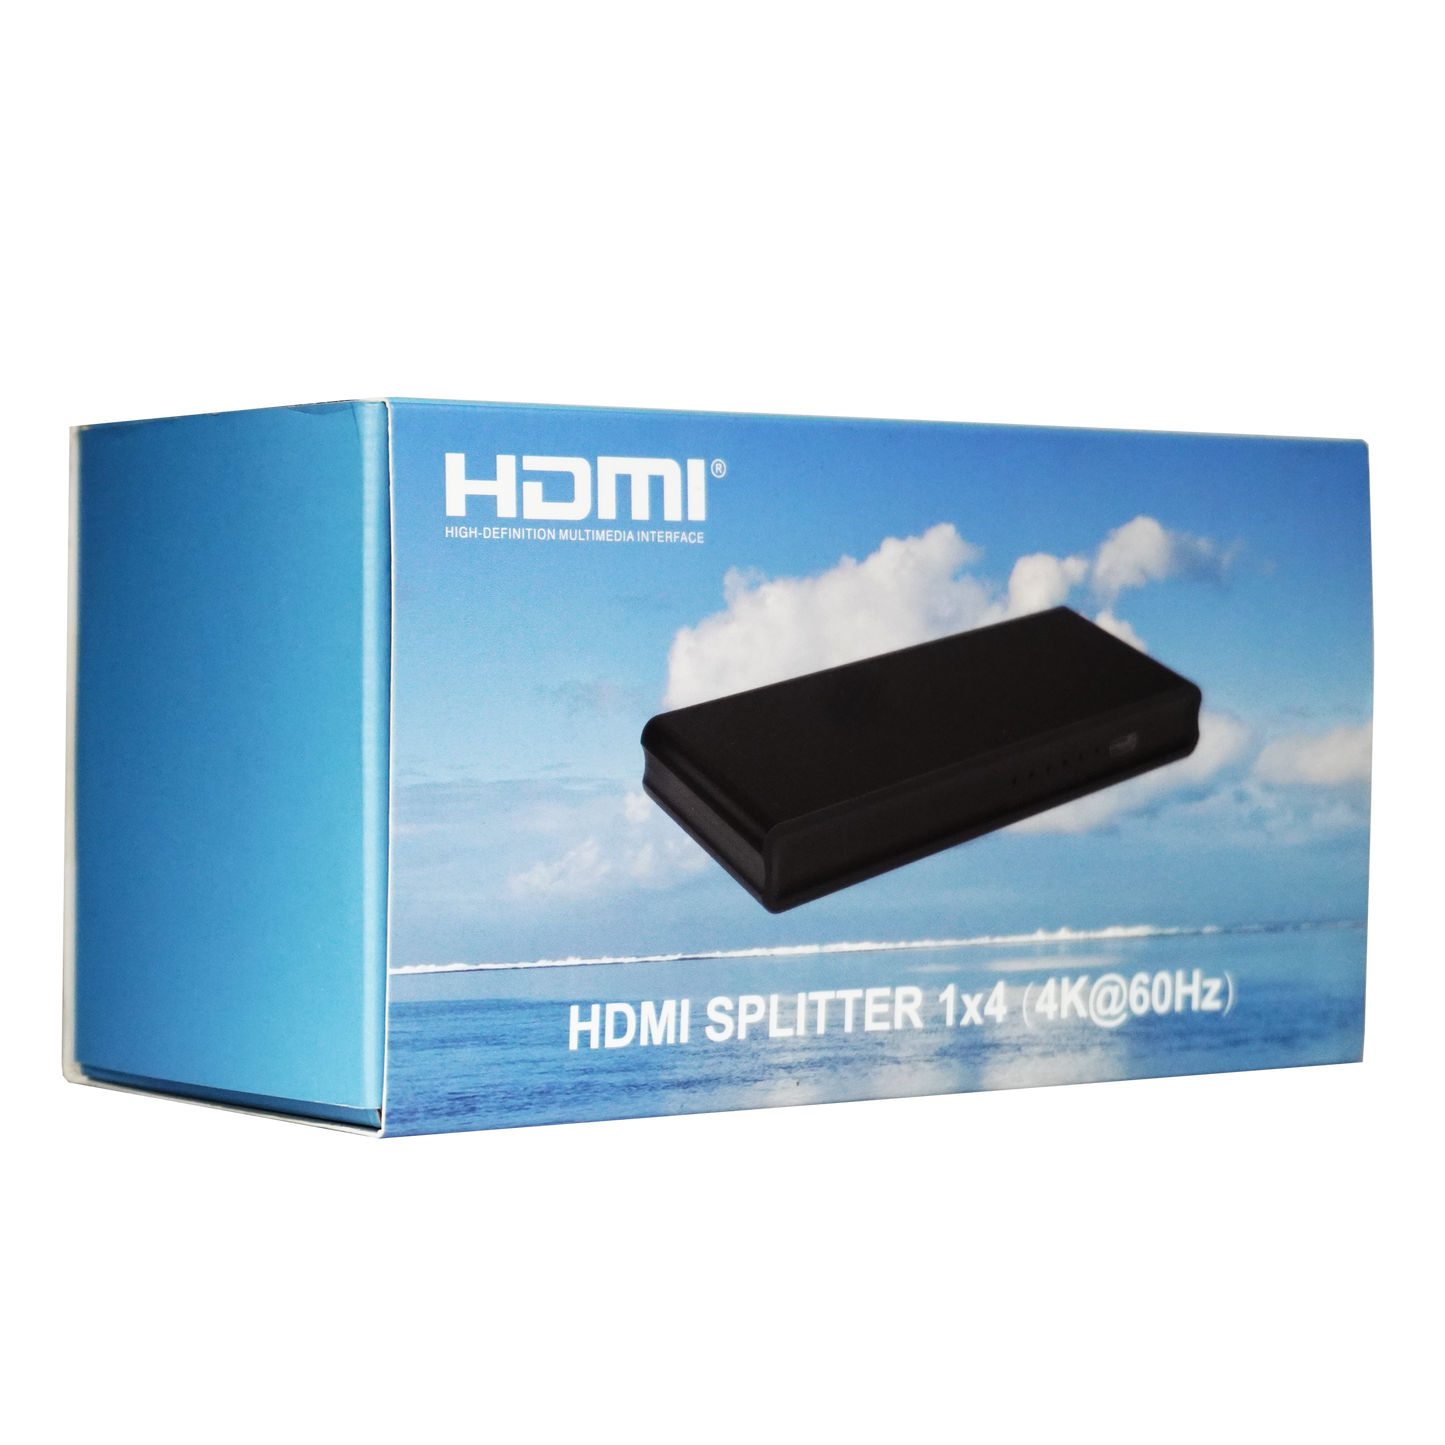 HDMI SPLITTER 1*4 (4k@60Hz)